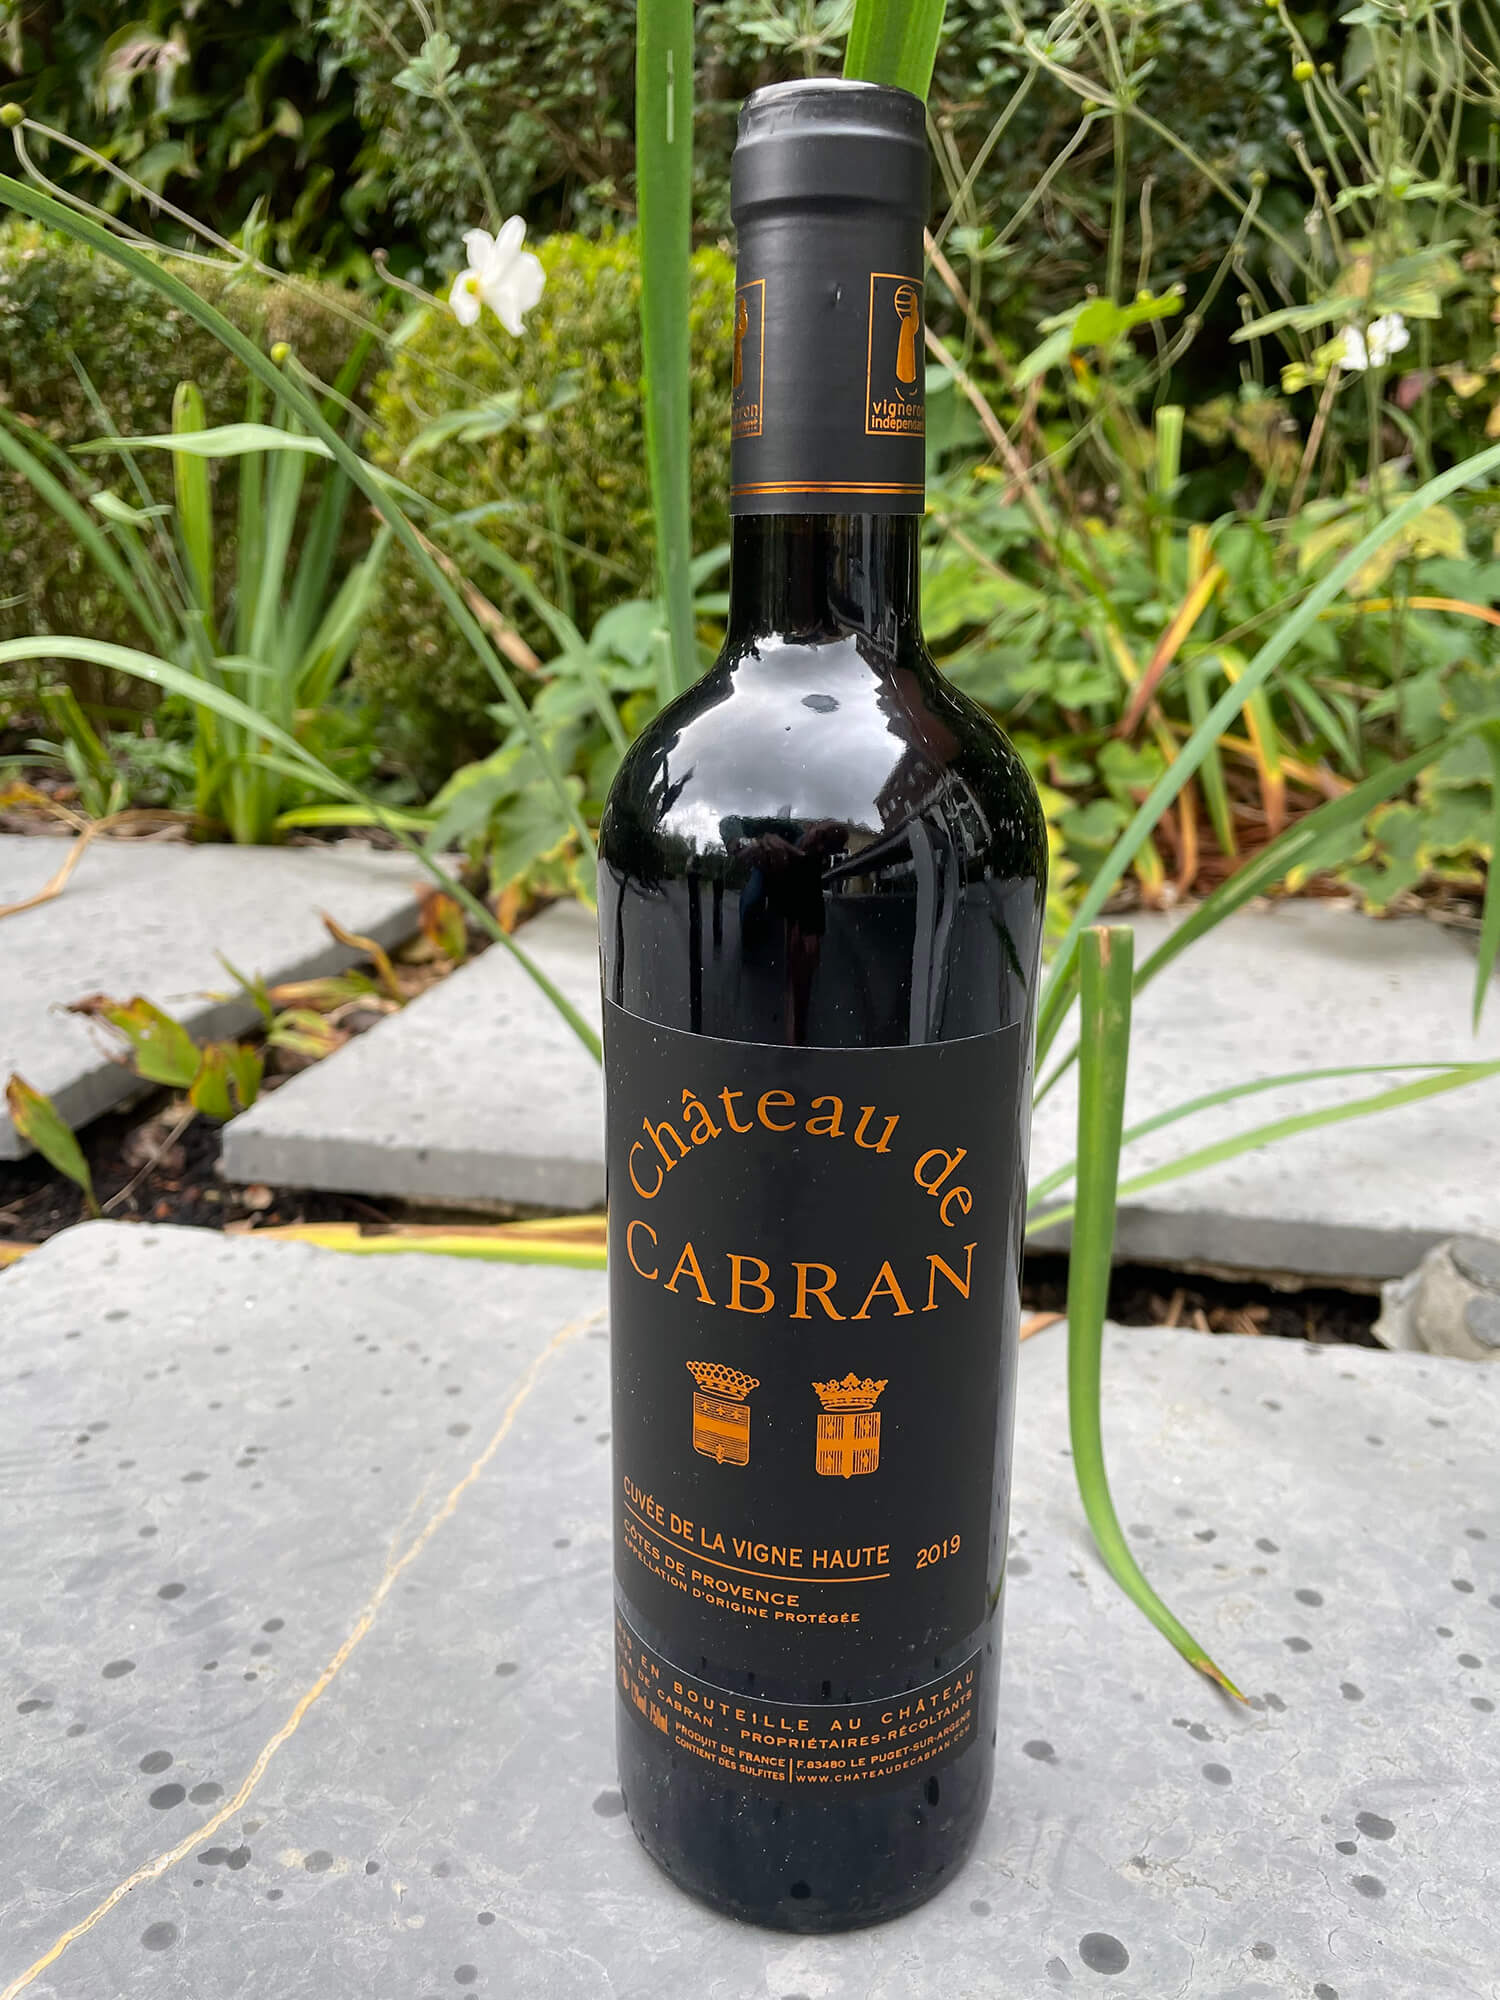 Château de Cabran – Rood, Vigne Haute 2019